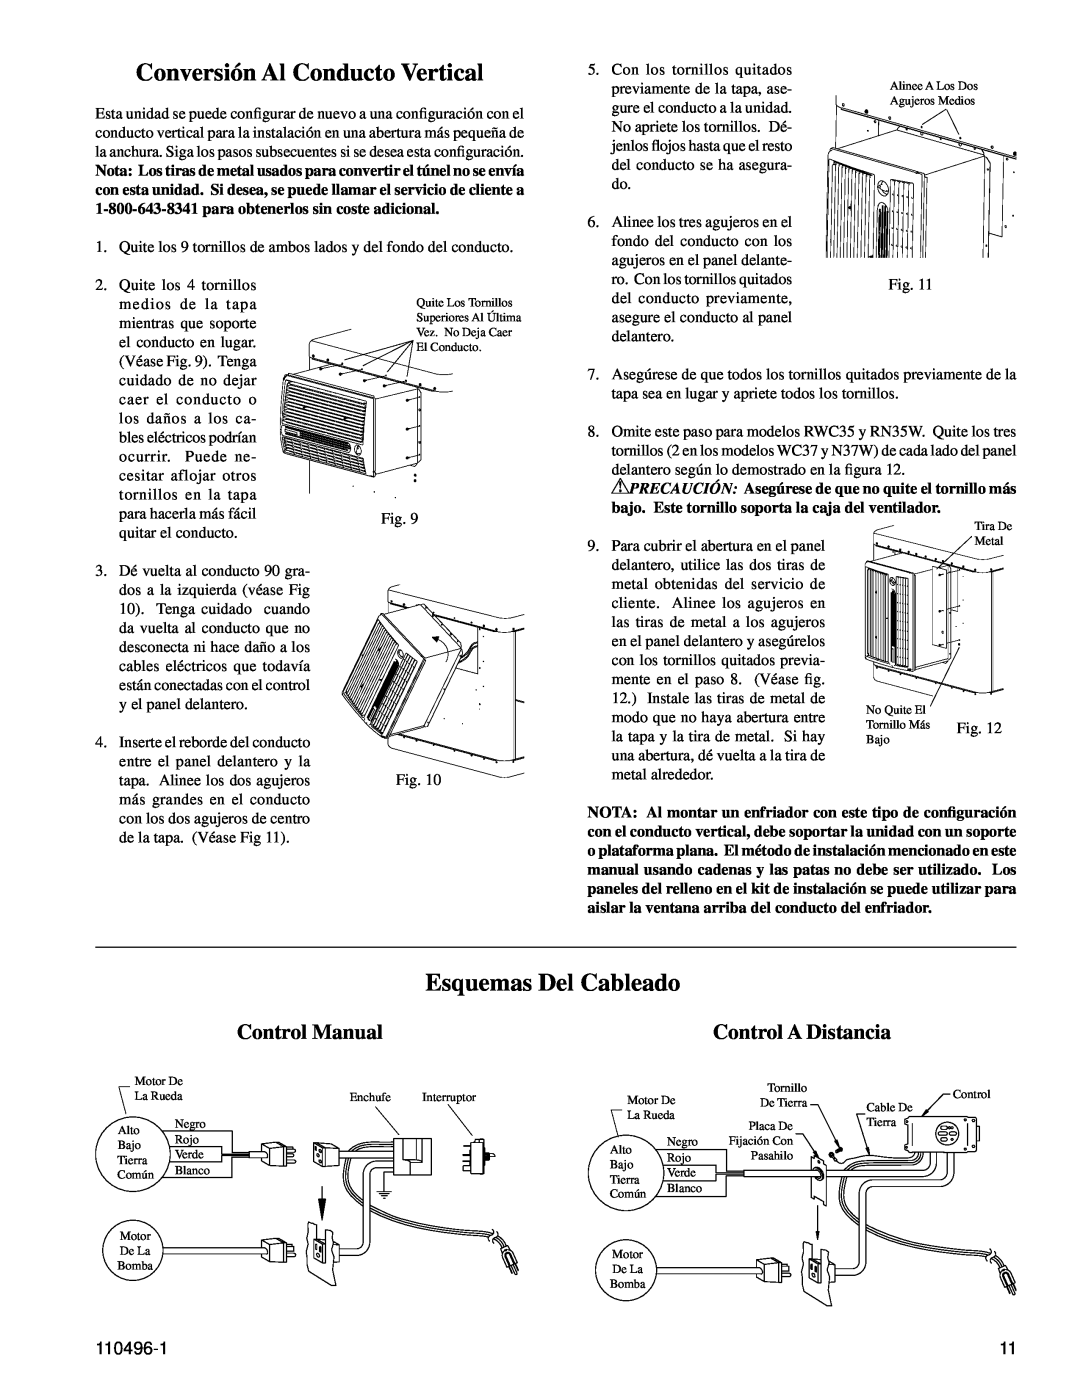 Essick Air RN50W Conversión Al Conducto Vertical, Esquemas Del Cableado, Control Manual, Control A Distancia, 110496-1 